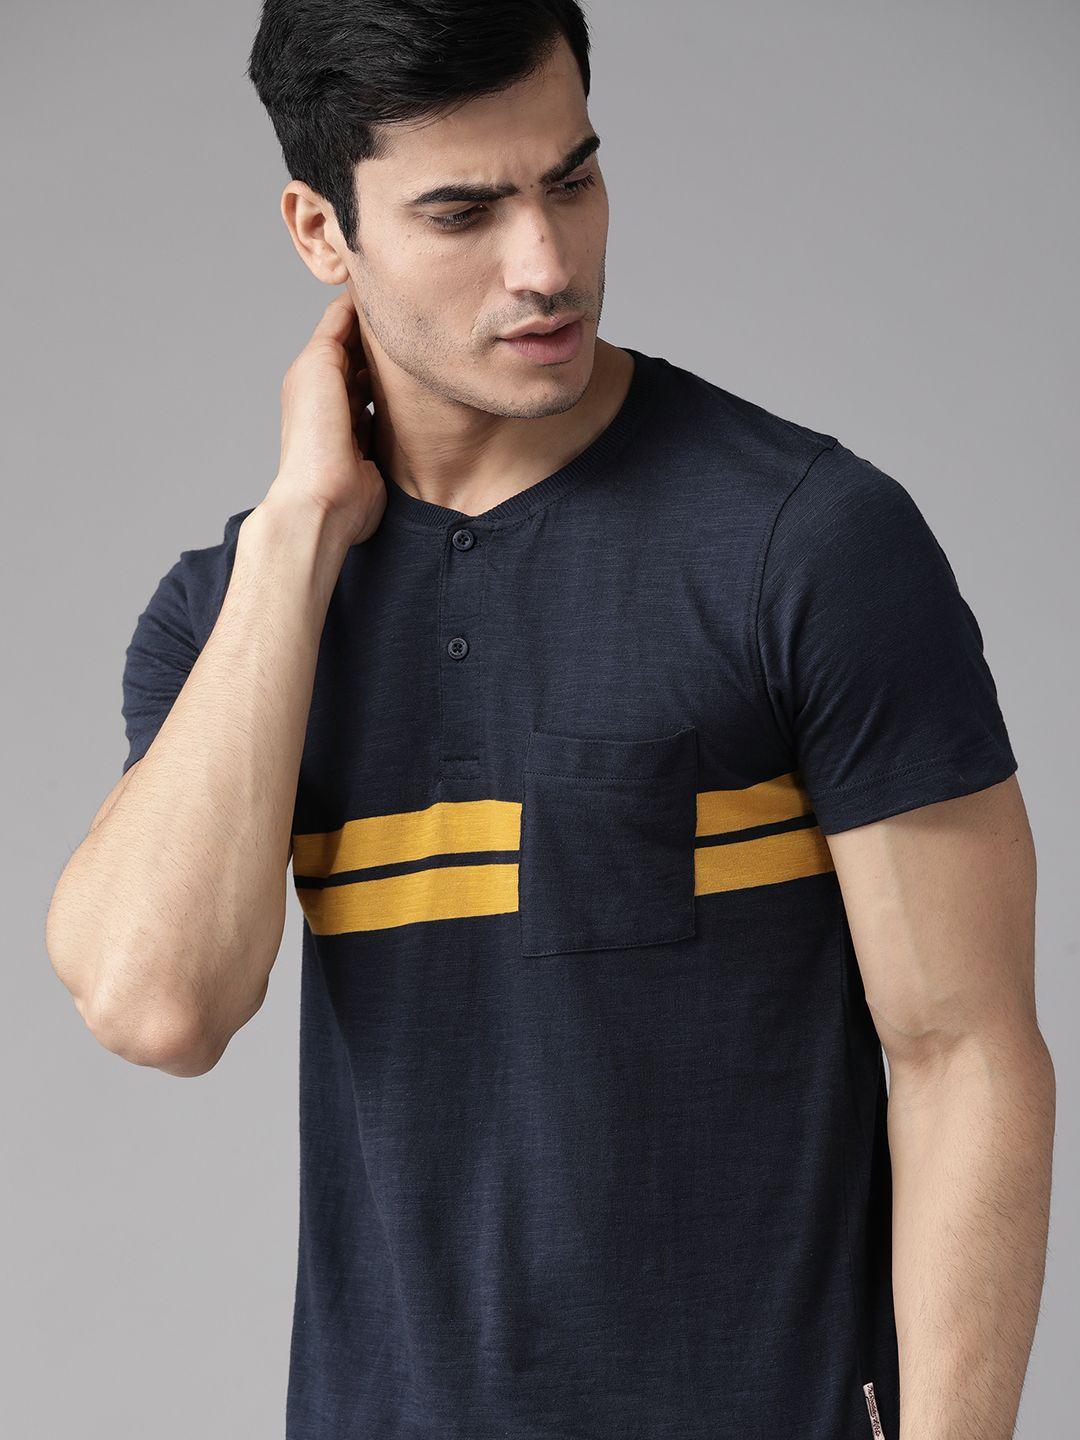 roadster men navy blue & mustard yellow striped henley neck t-shirt